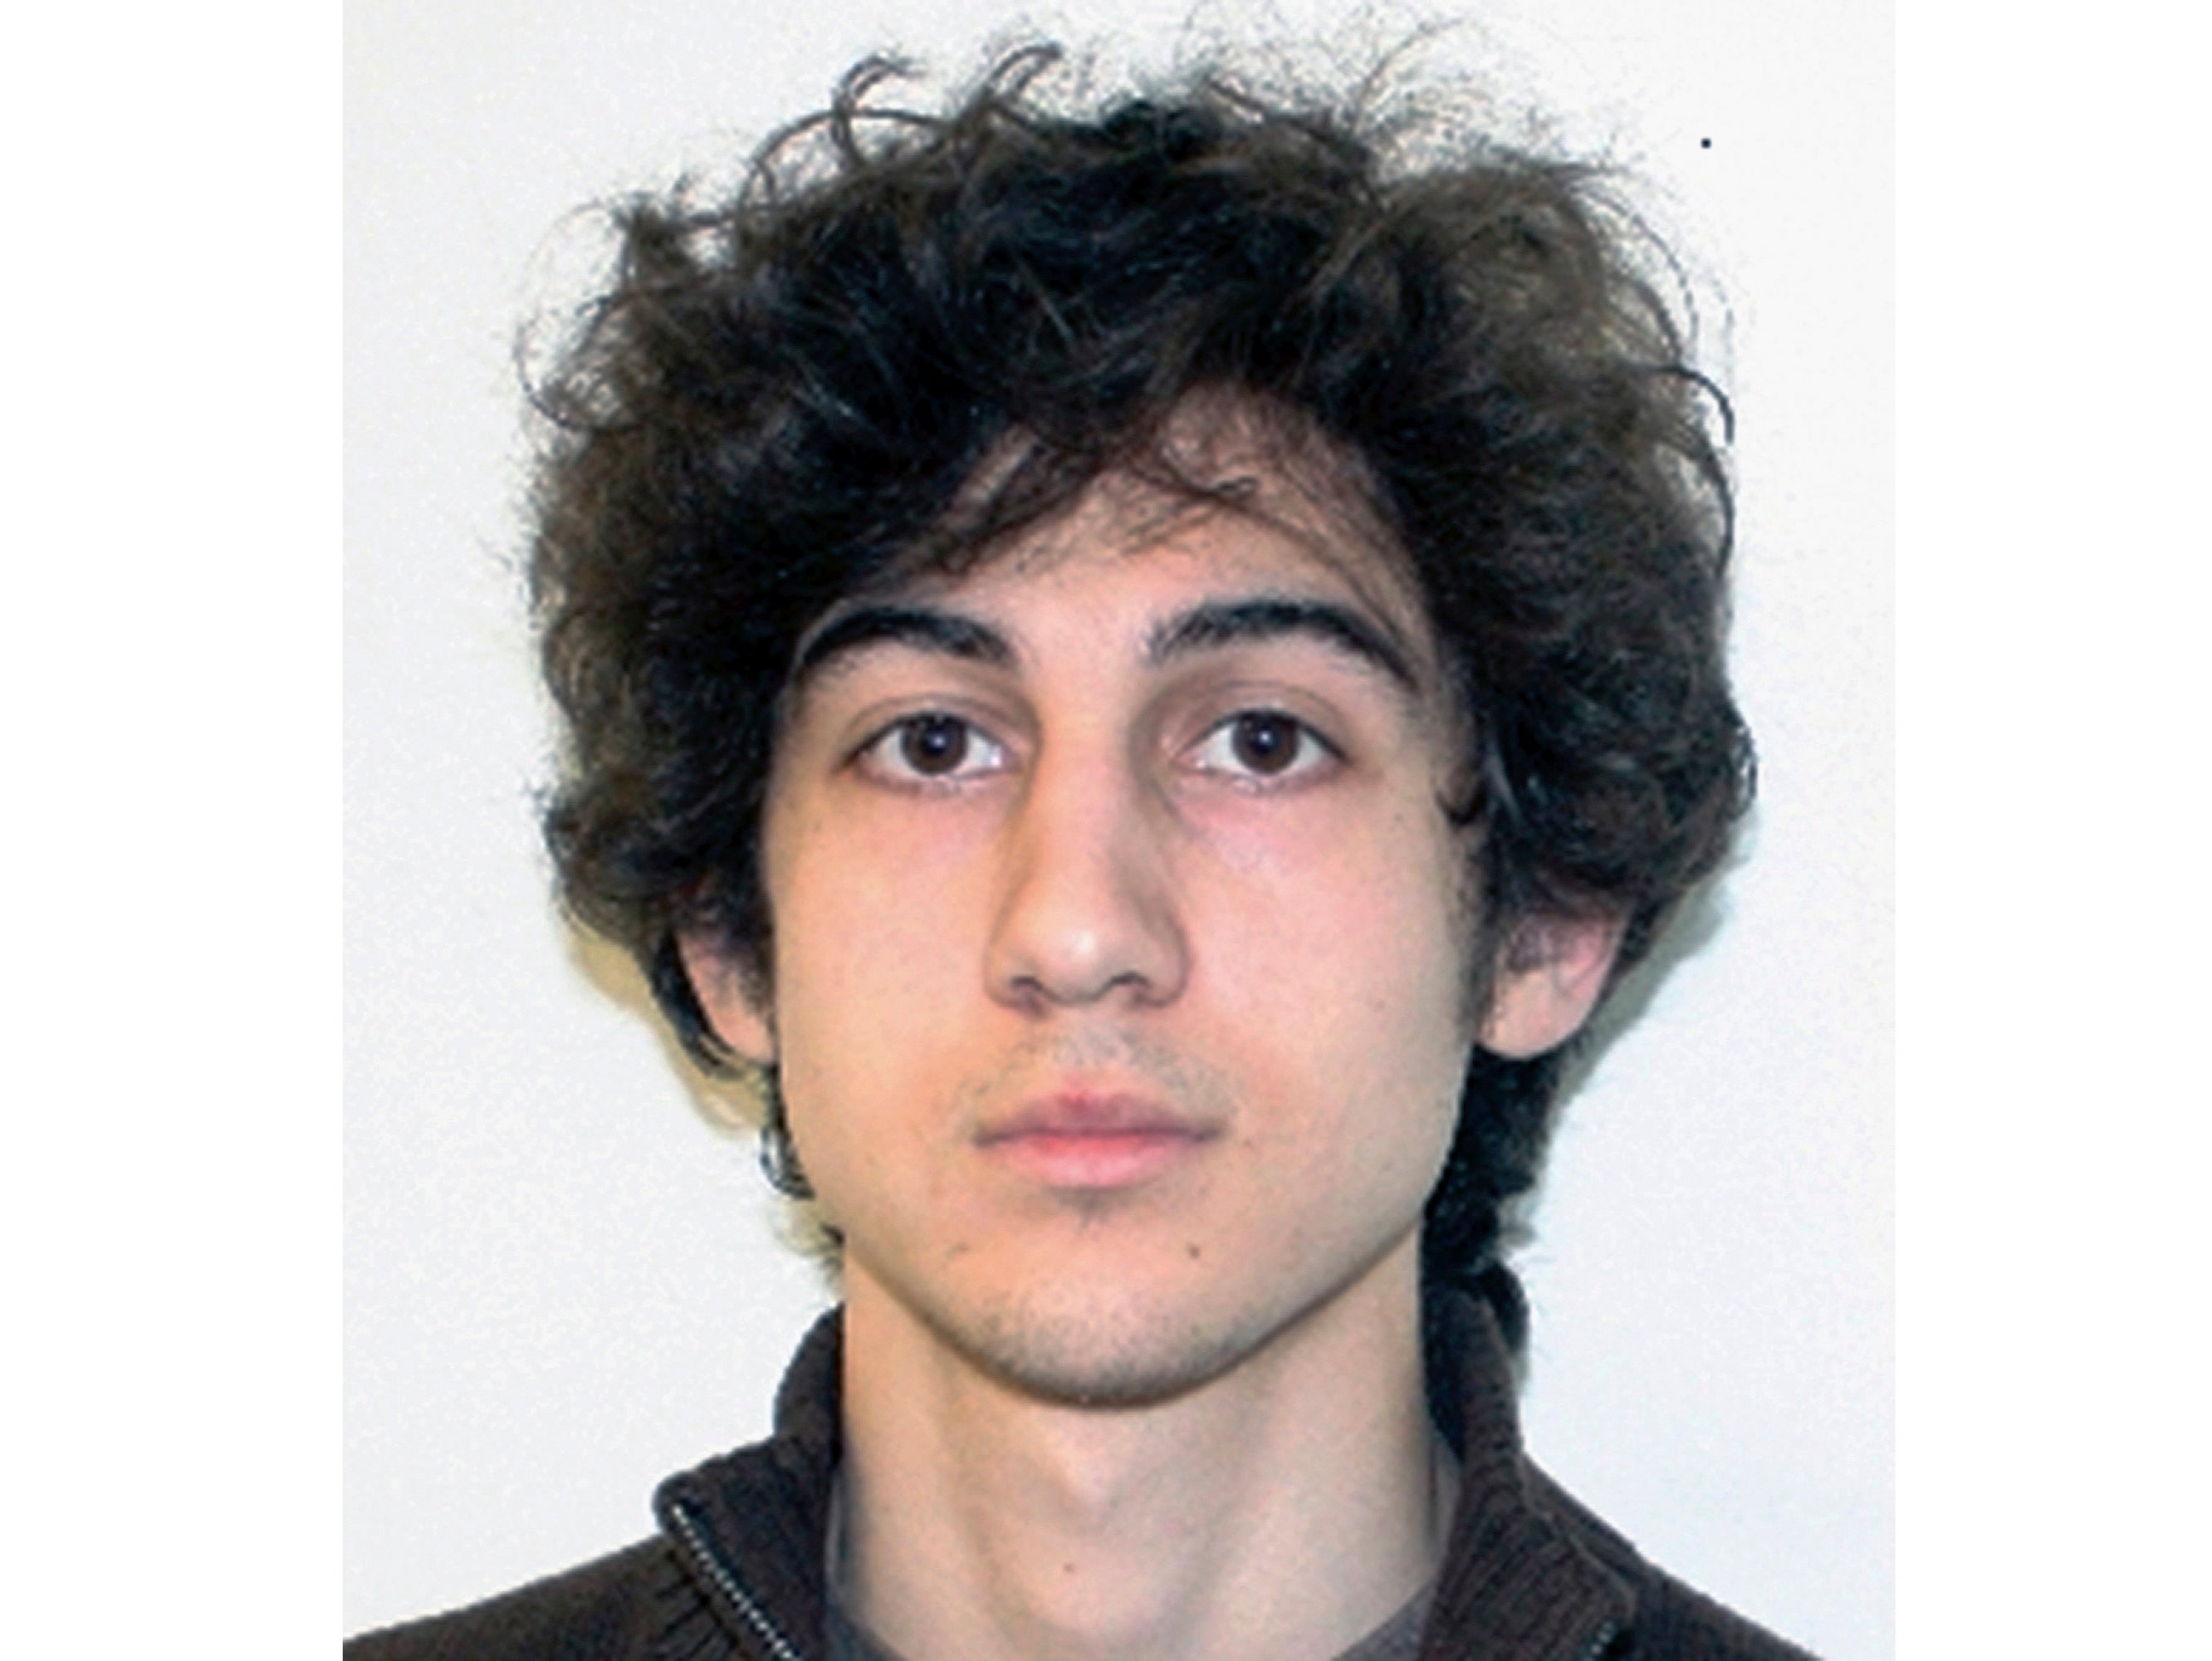 Esta foto de archivo publicada el 19 de abril de 2013 por la Oficina Federal de Investigaciones muestra a Dzhokhar Tsarnaev, declarado culpable y sentenciado a muerte por llevar a cabo el ataque con bomba en el Maratón de Boston del 15 de abril de 2013 que mató a tres personas e hirió a más de 260